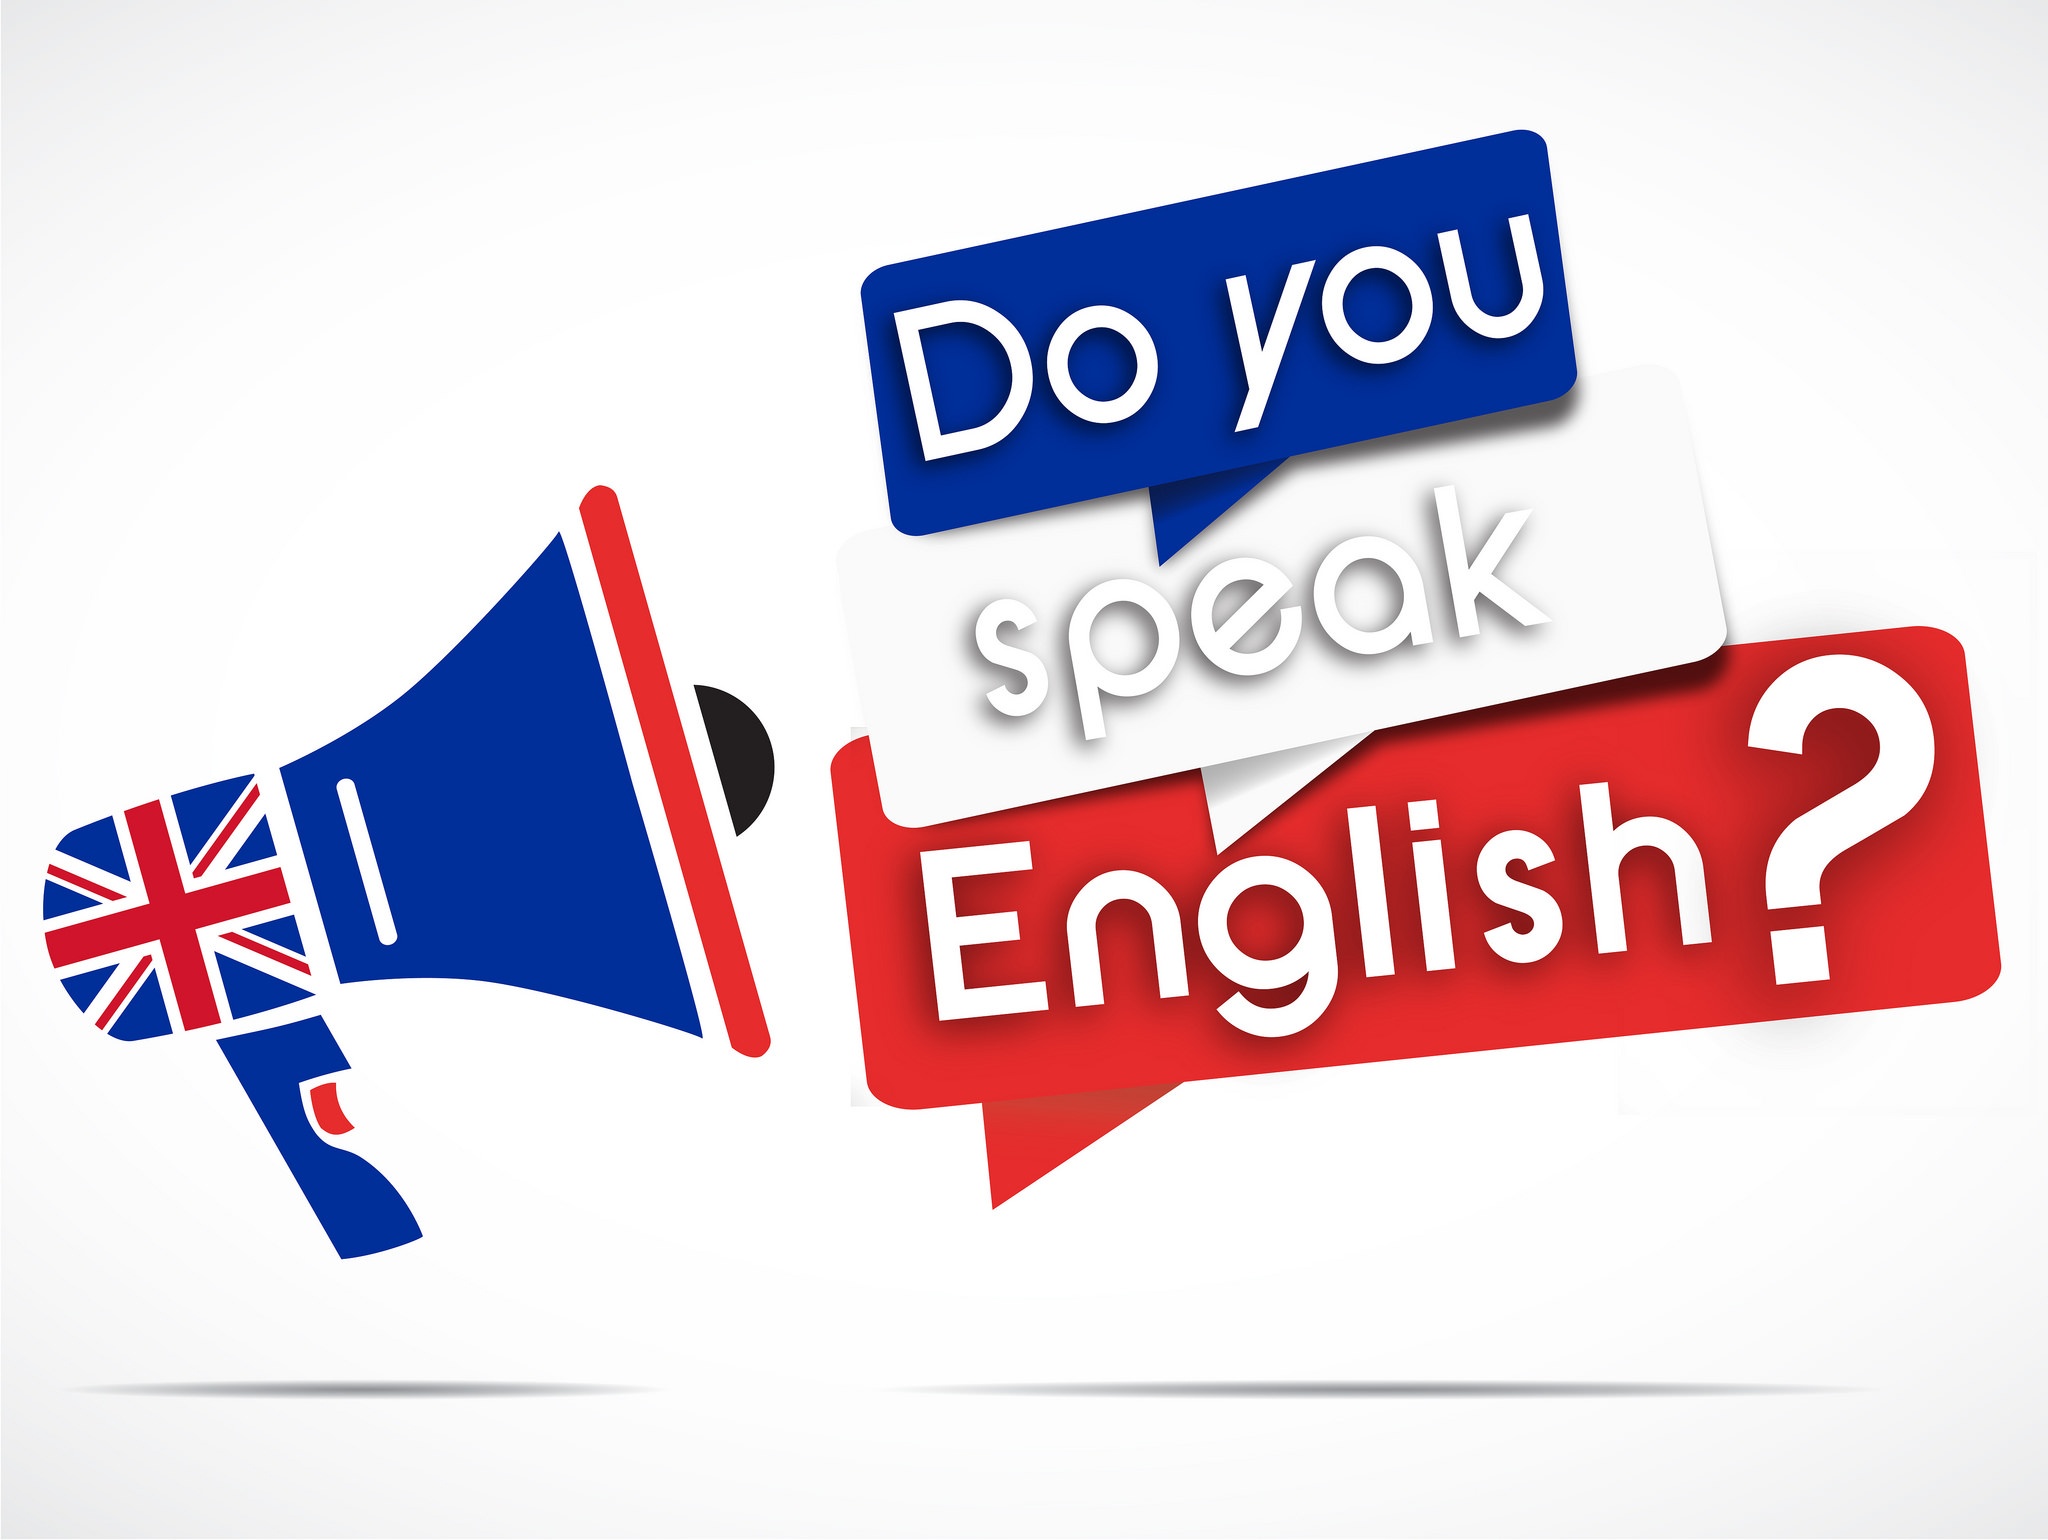 Ай спик инглиш. Speak English картинка. Do you speak English. Speak English надпись. Английский язык do you speak.